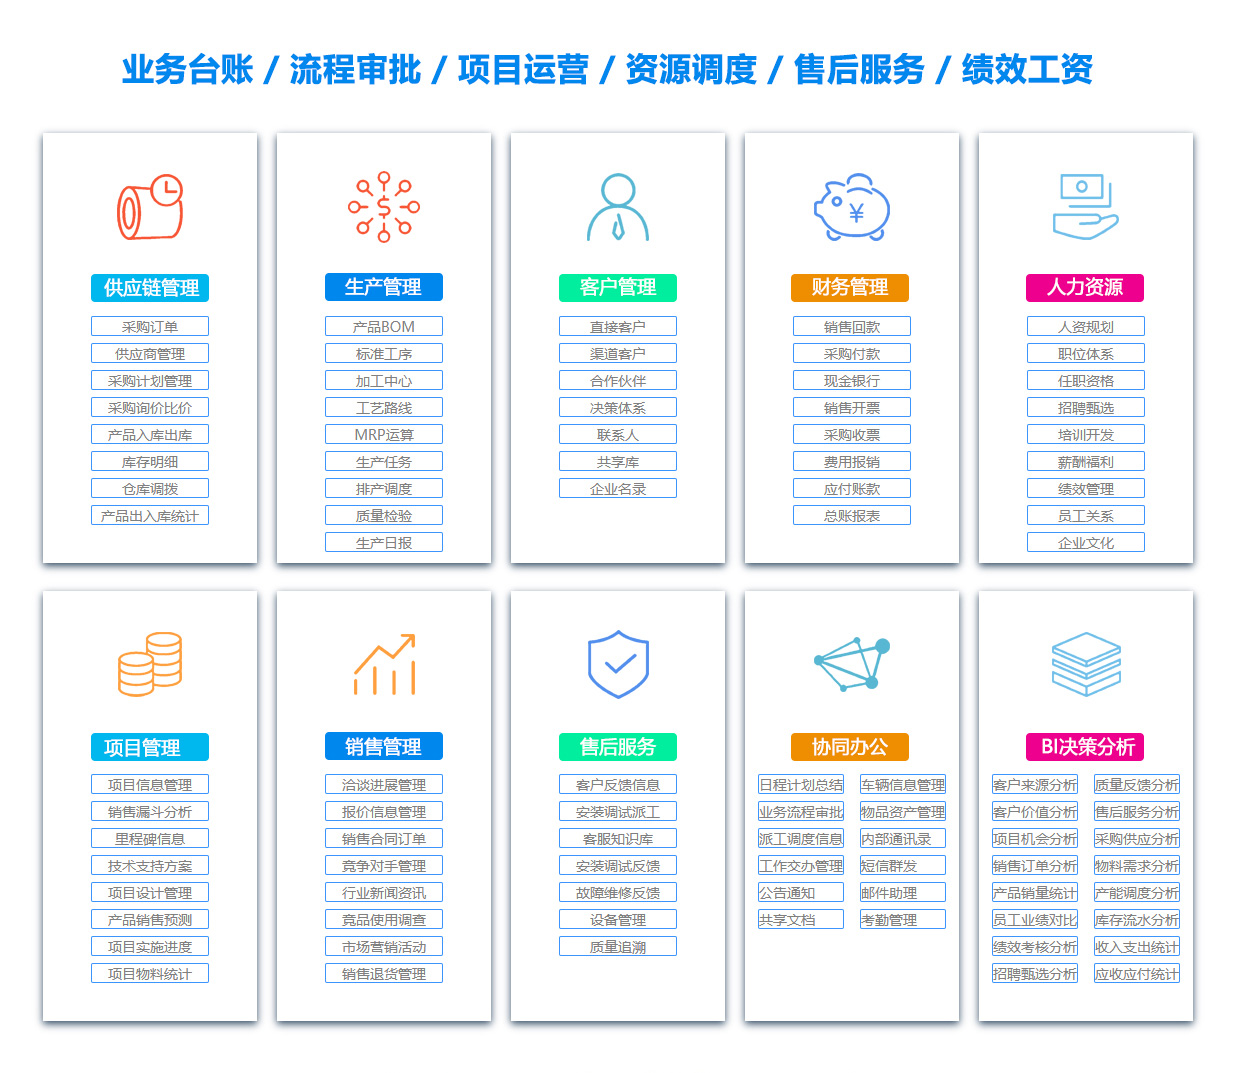 九江客户资料管理系统